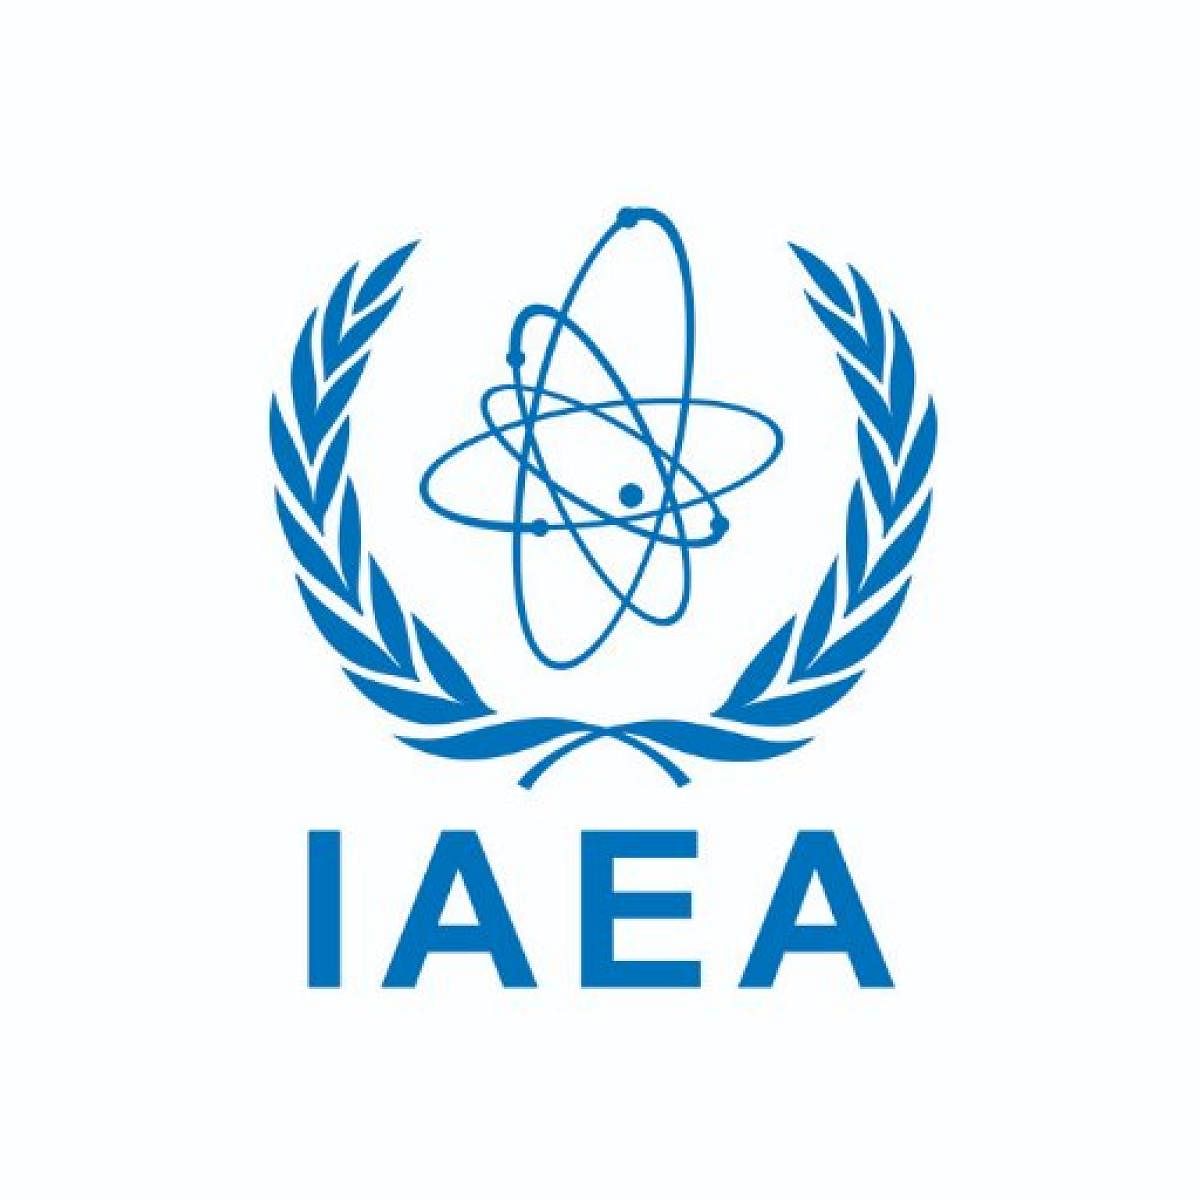 Iran: Uranium at undeclared site, IAEA asks explanation